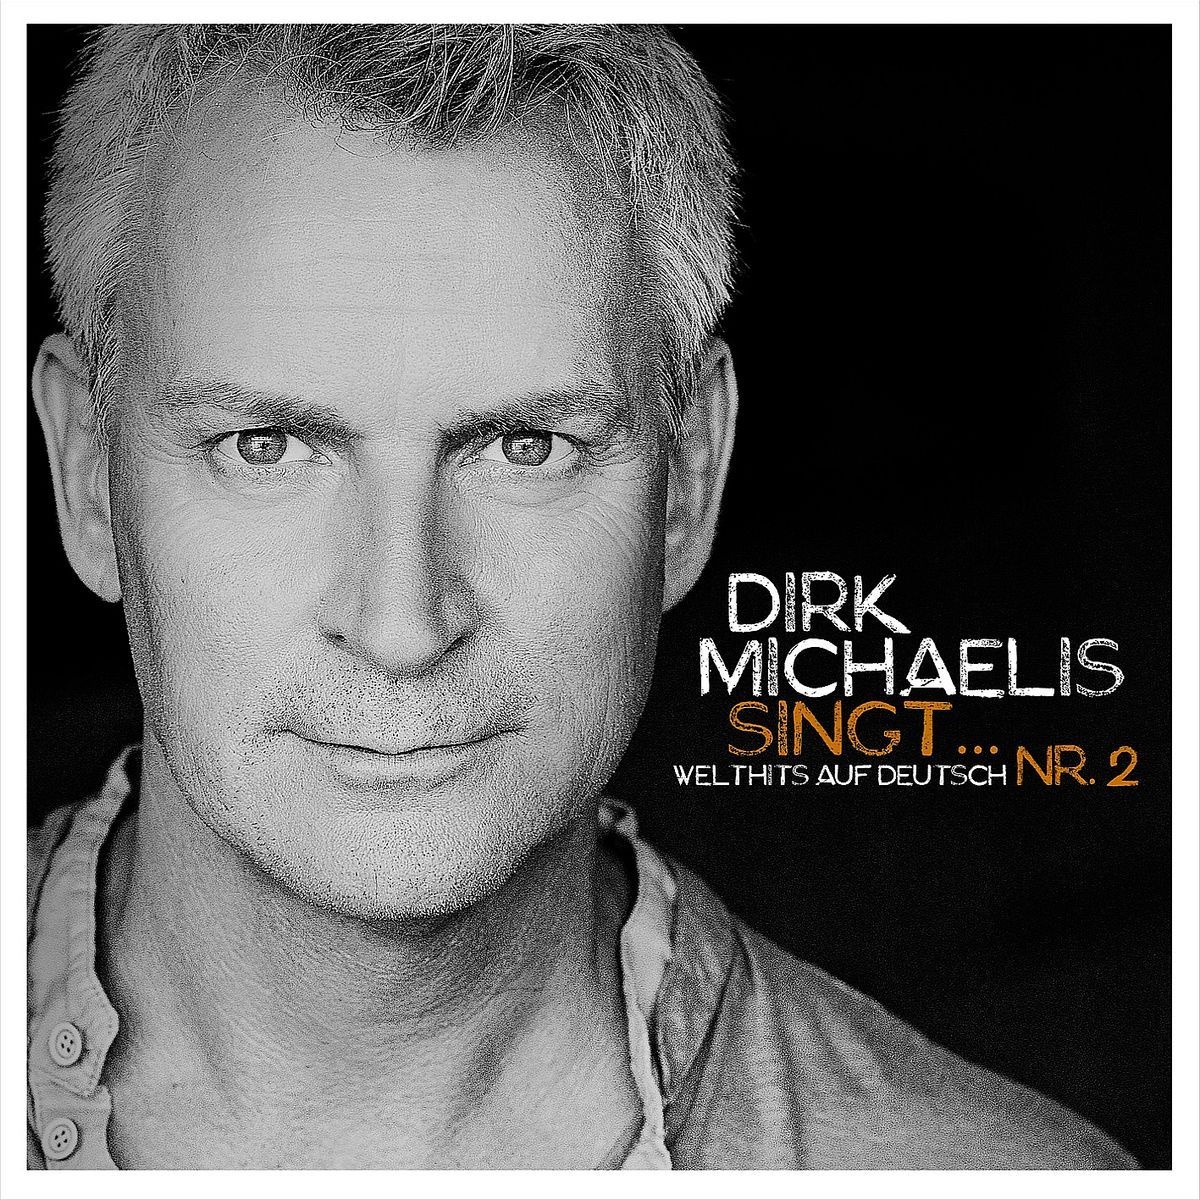 Dirk Michaelis Singt...Nr. 2 (Welthits auf Deutsch) - Dirk Michaelis. (CD)